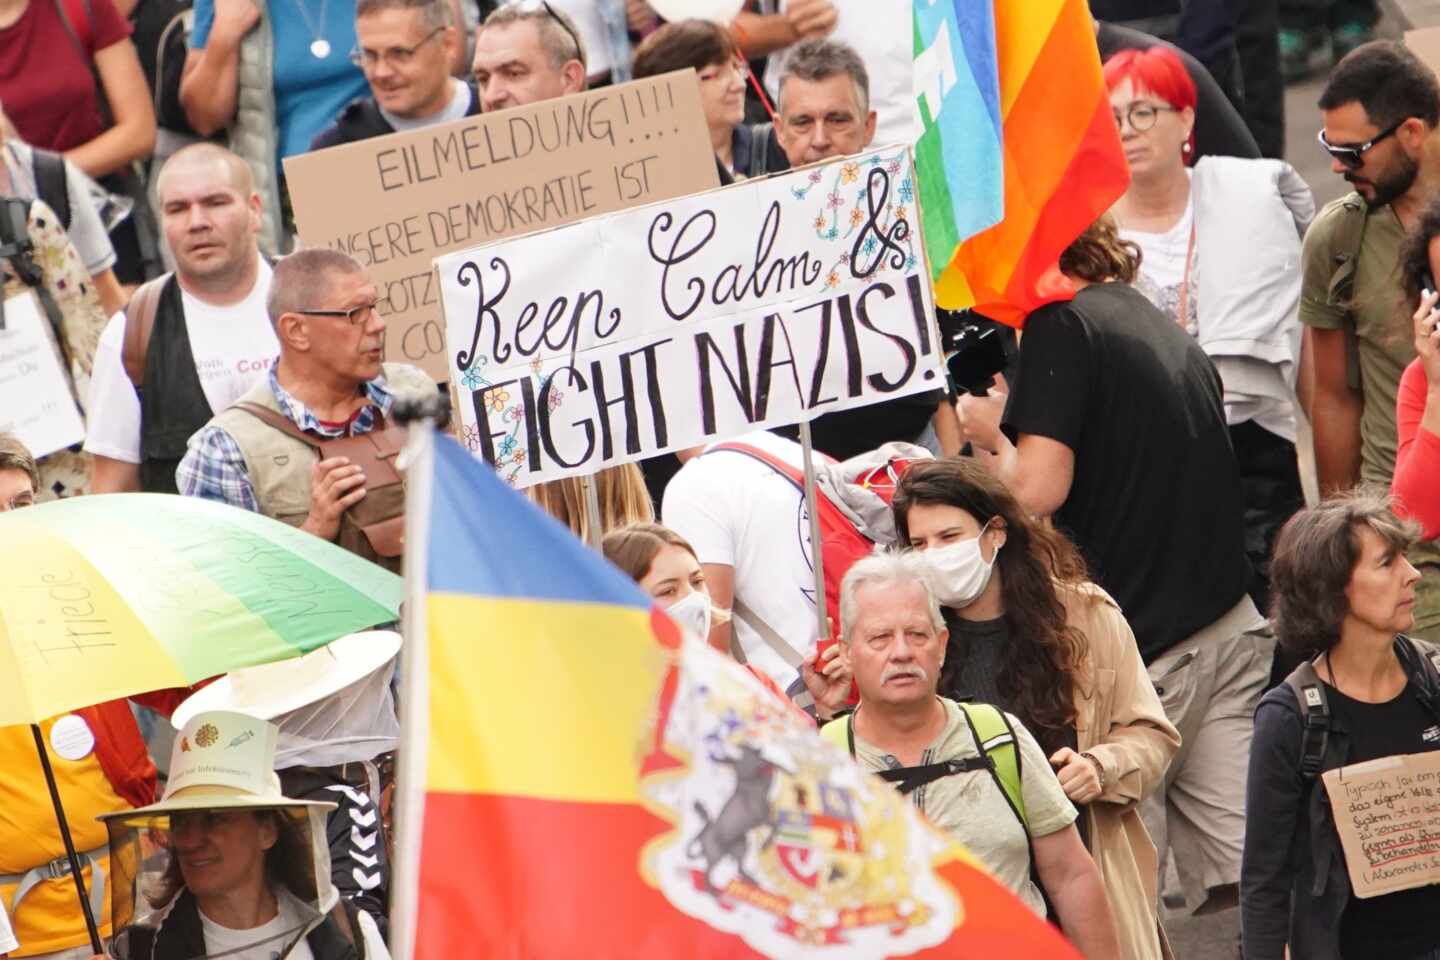 Miles de negacionistas se manifiestan en Berlín sin mascarillas ni distancia social